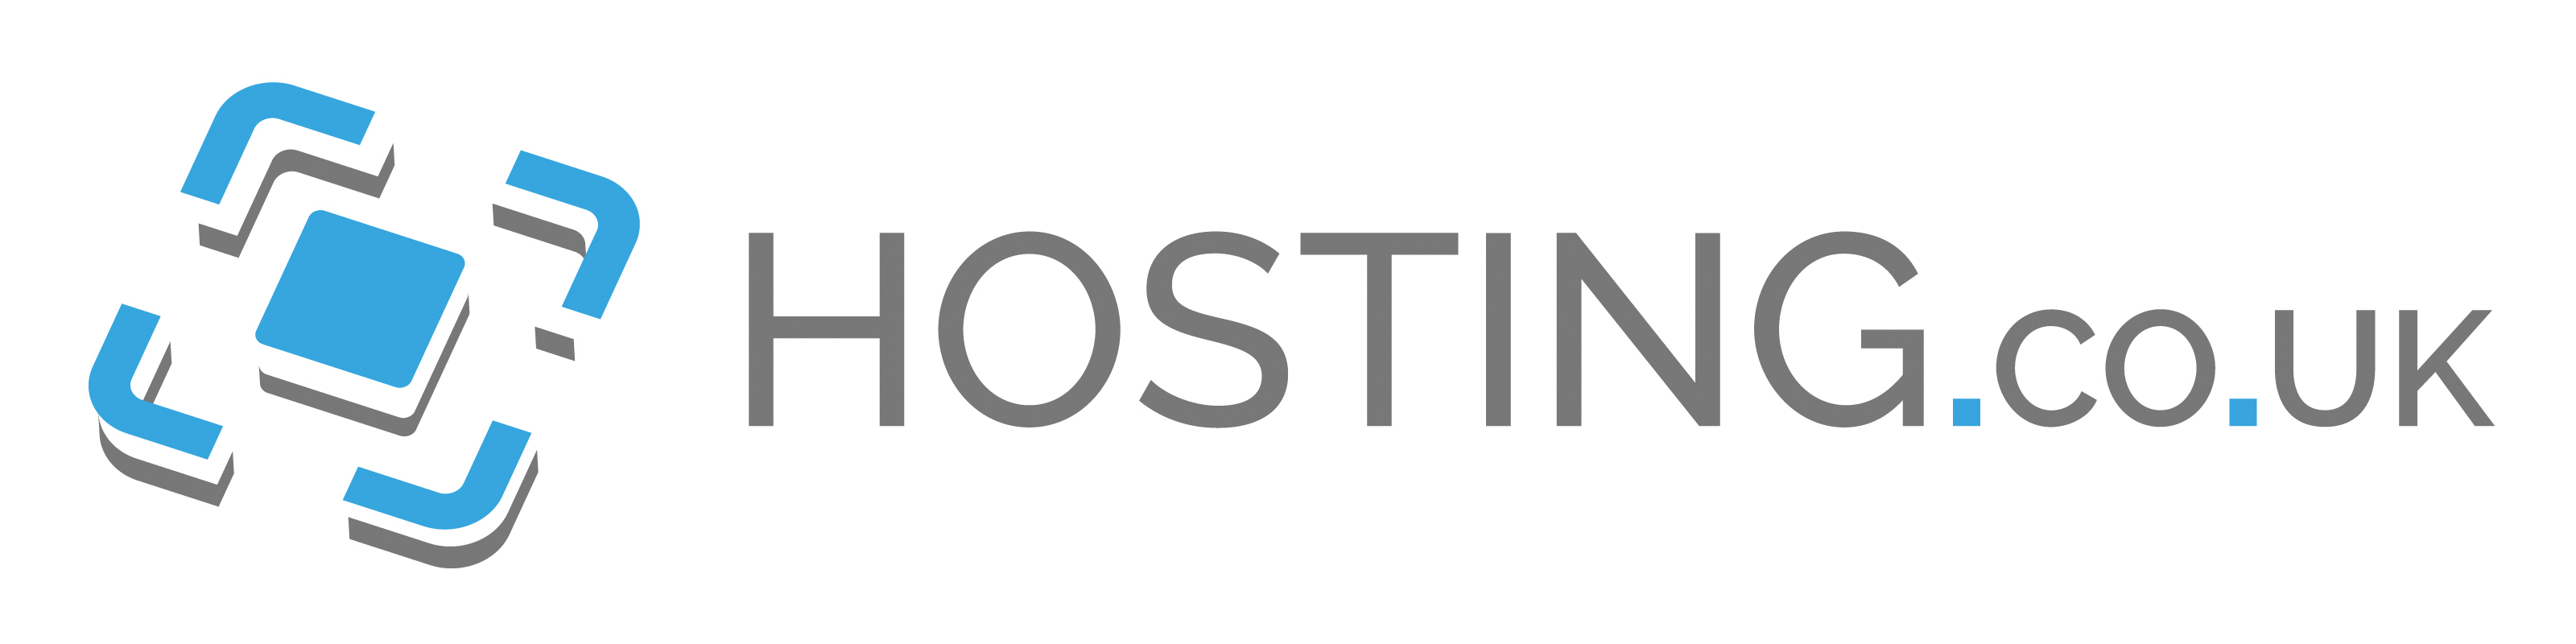 hosting.co_.uk_.jpg